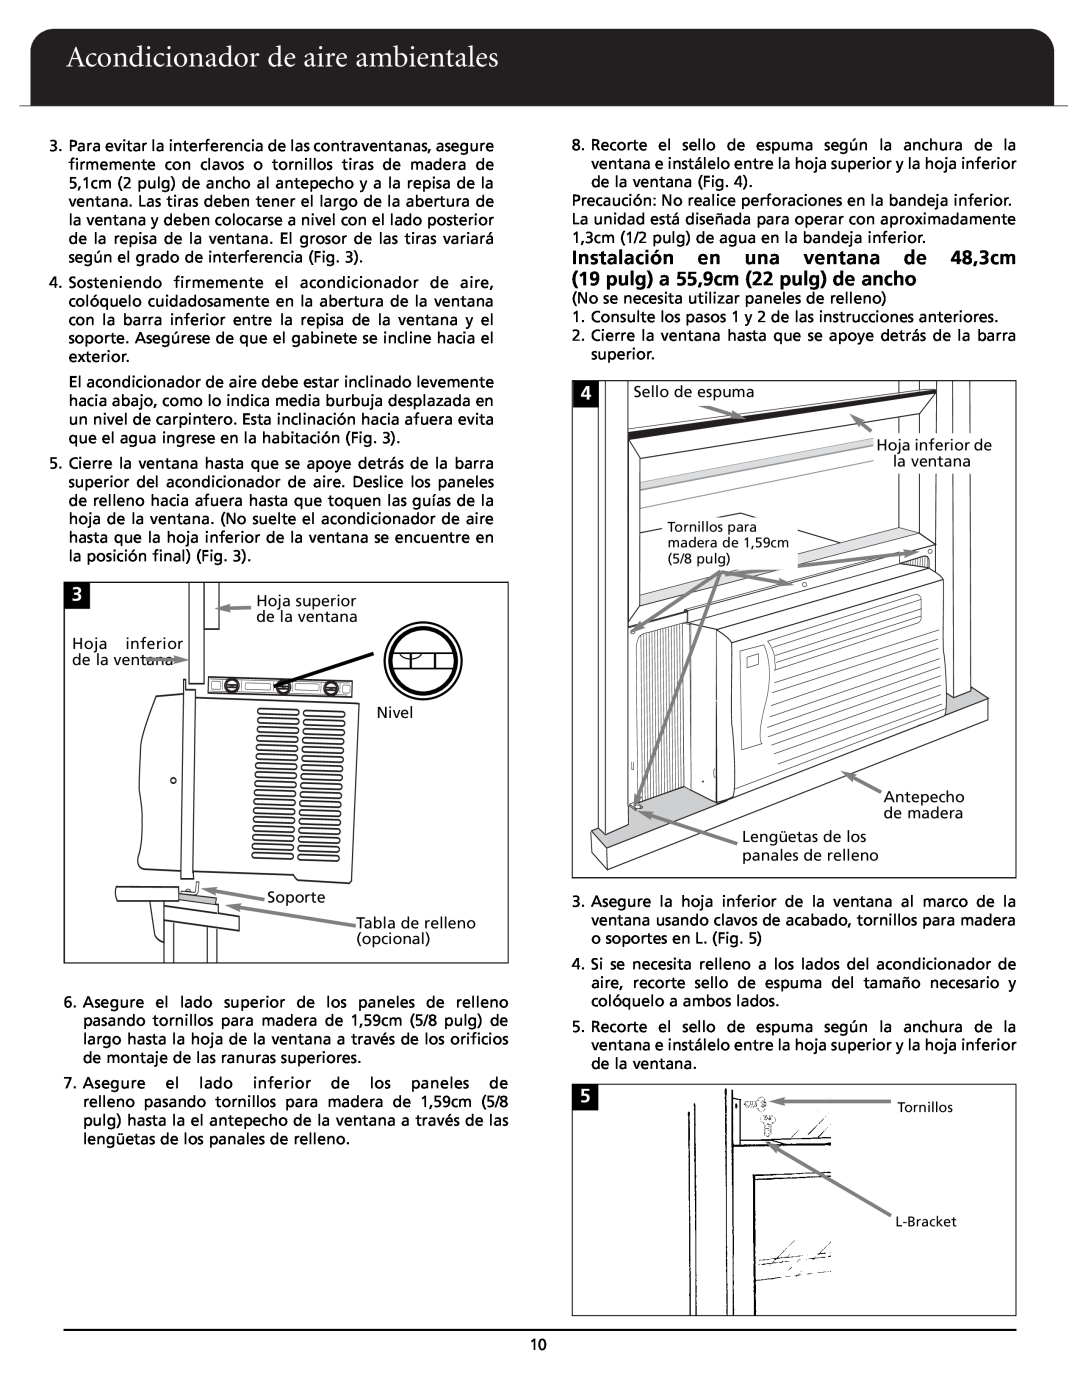 Fedders A6X05F2D important safety instructions Acondicionador de aire ambientales, Hoja superior 